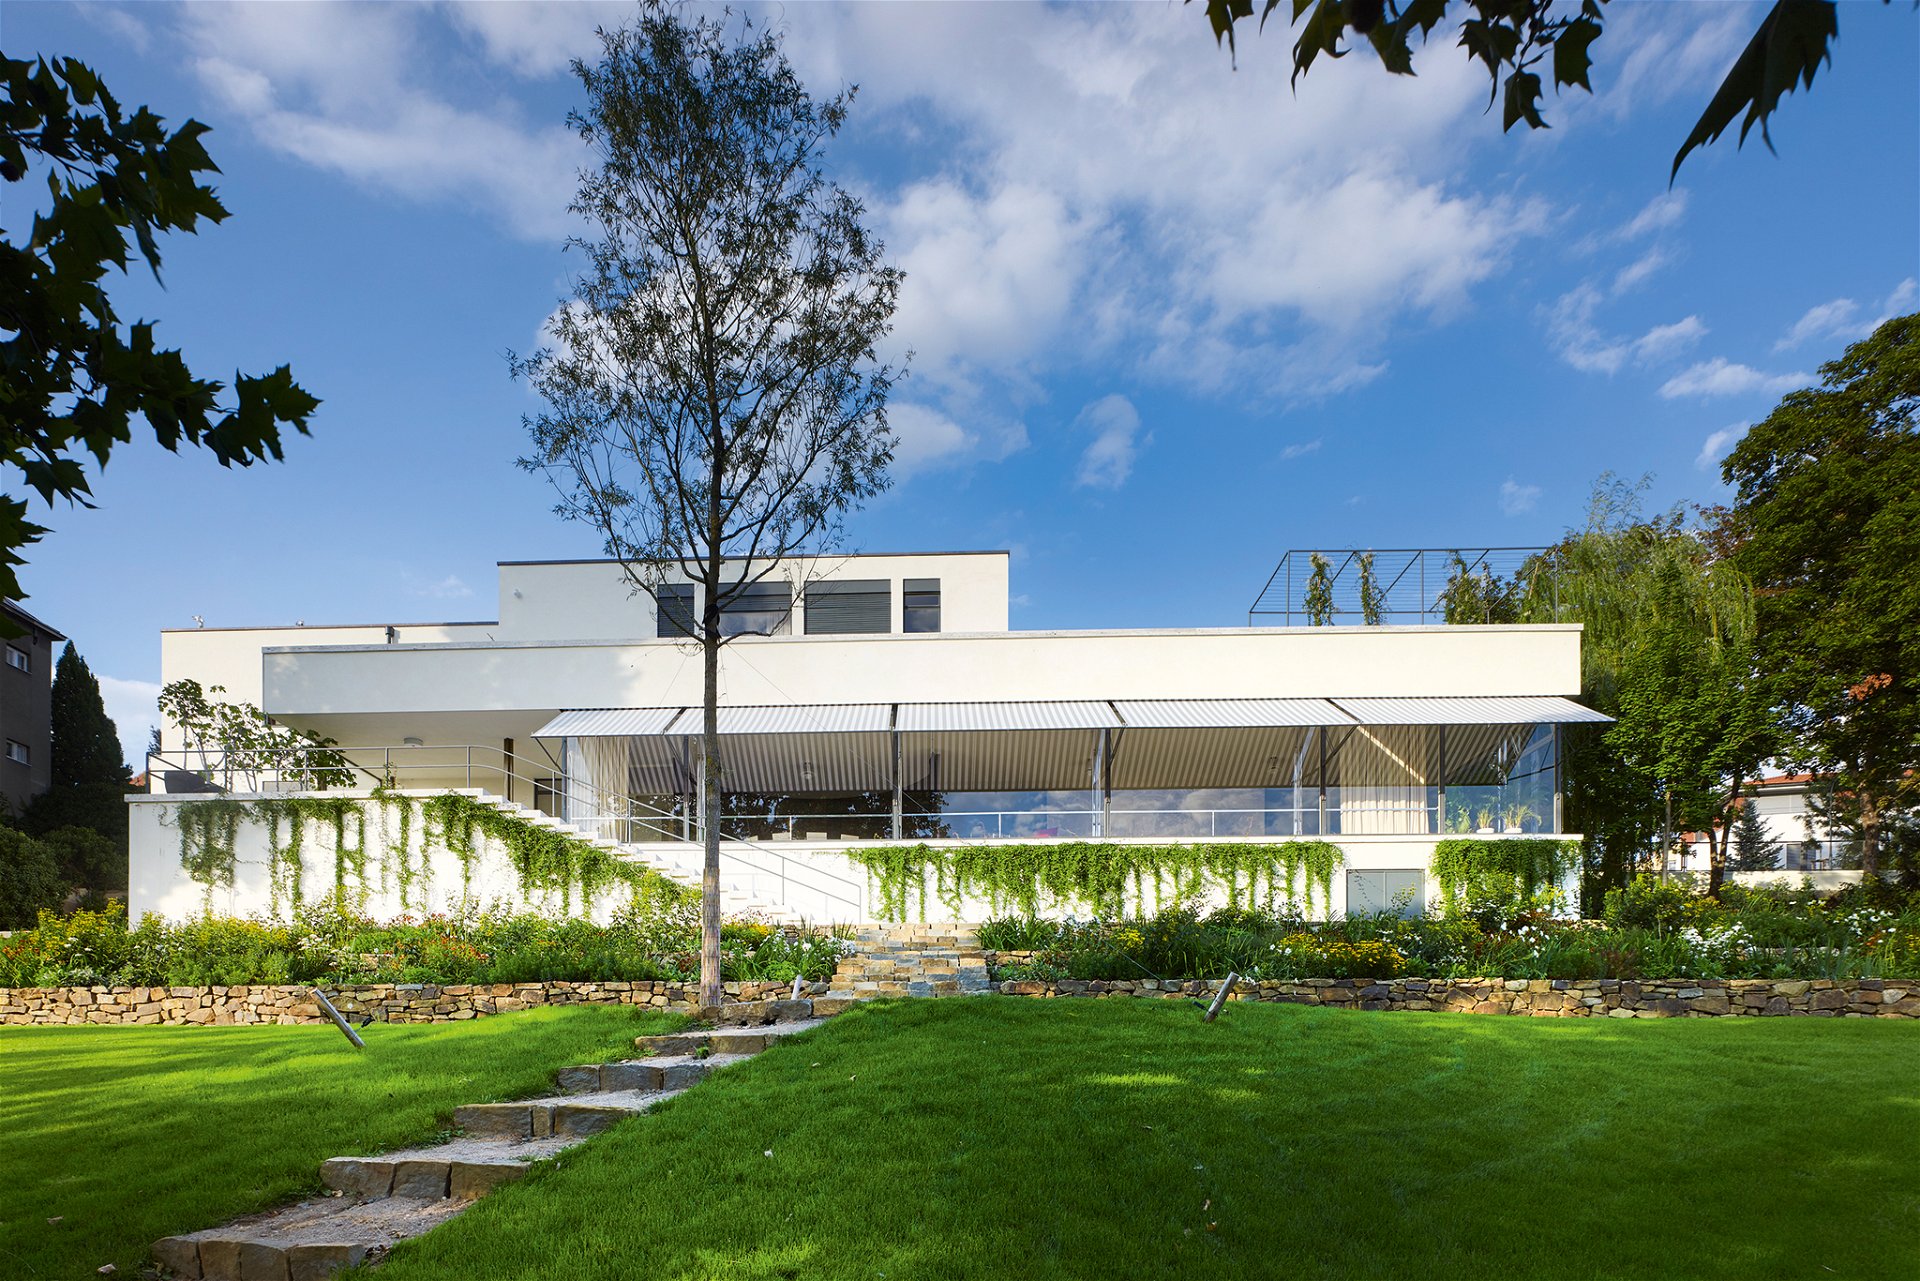 Villa Tugendhat Ludwig Mies van der Rohe, 1930 »Einer der Prototypen moderner Architektur in Europa. Eines der bekanntesten Häuser der Welt und eines der drei wichtigsten Häuser des 20. Jahrhunderts.«